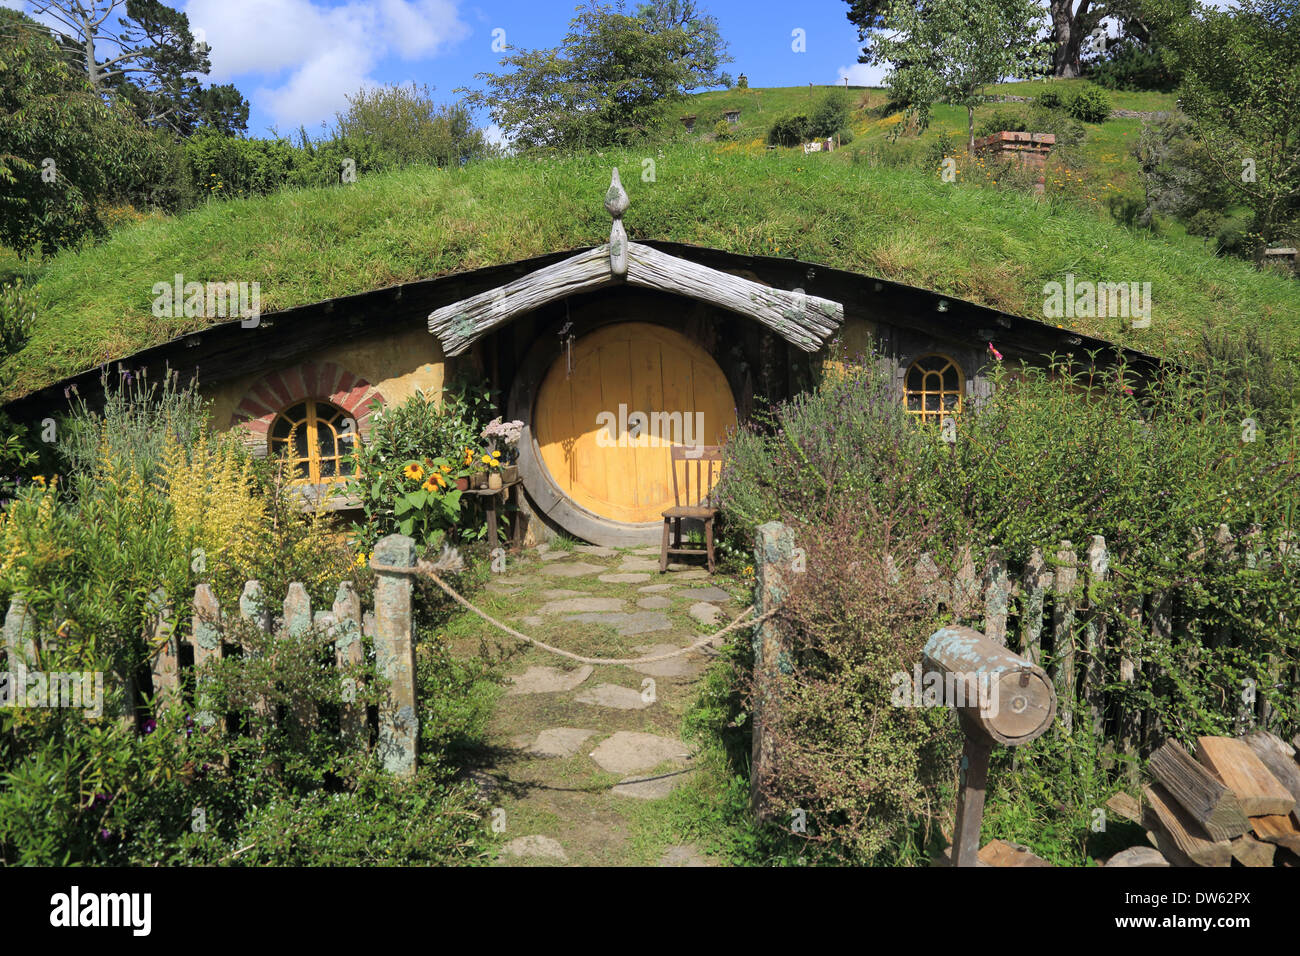 Agujero Hobbit, Hobbiton, Broadway, Matamata, Nr Cambridge, región de Waikato, Isla del Norte, Nueva Zelanda Foto de stock